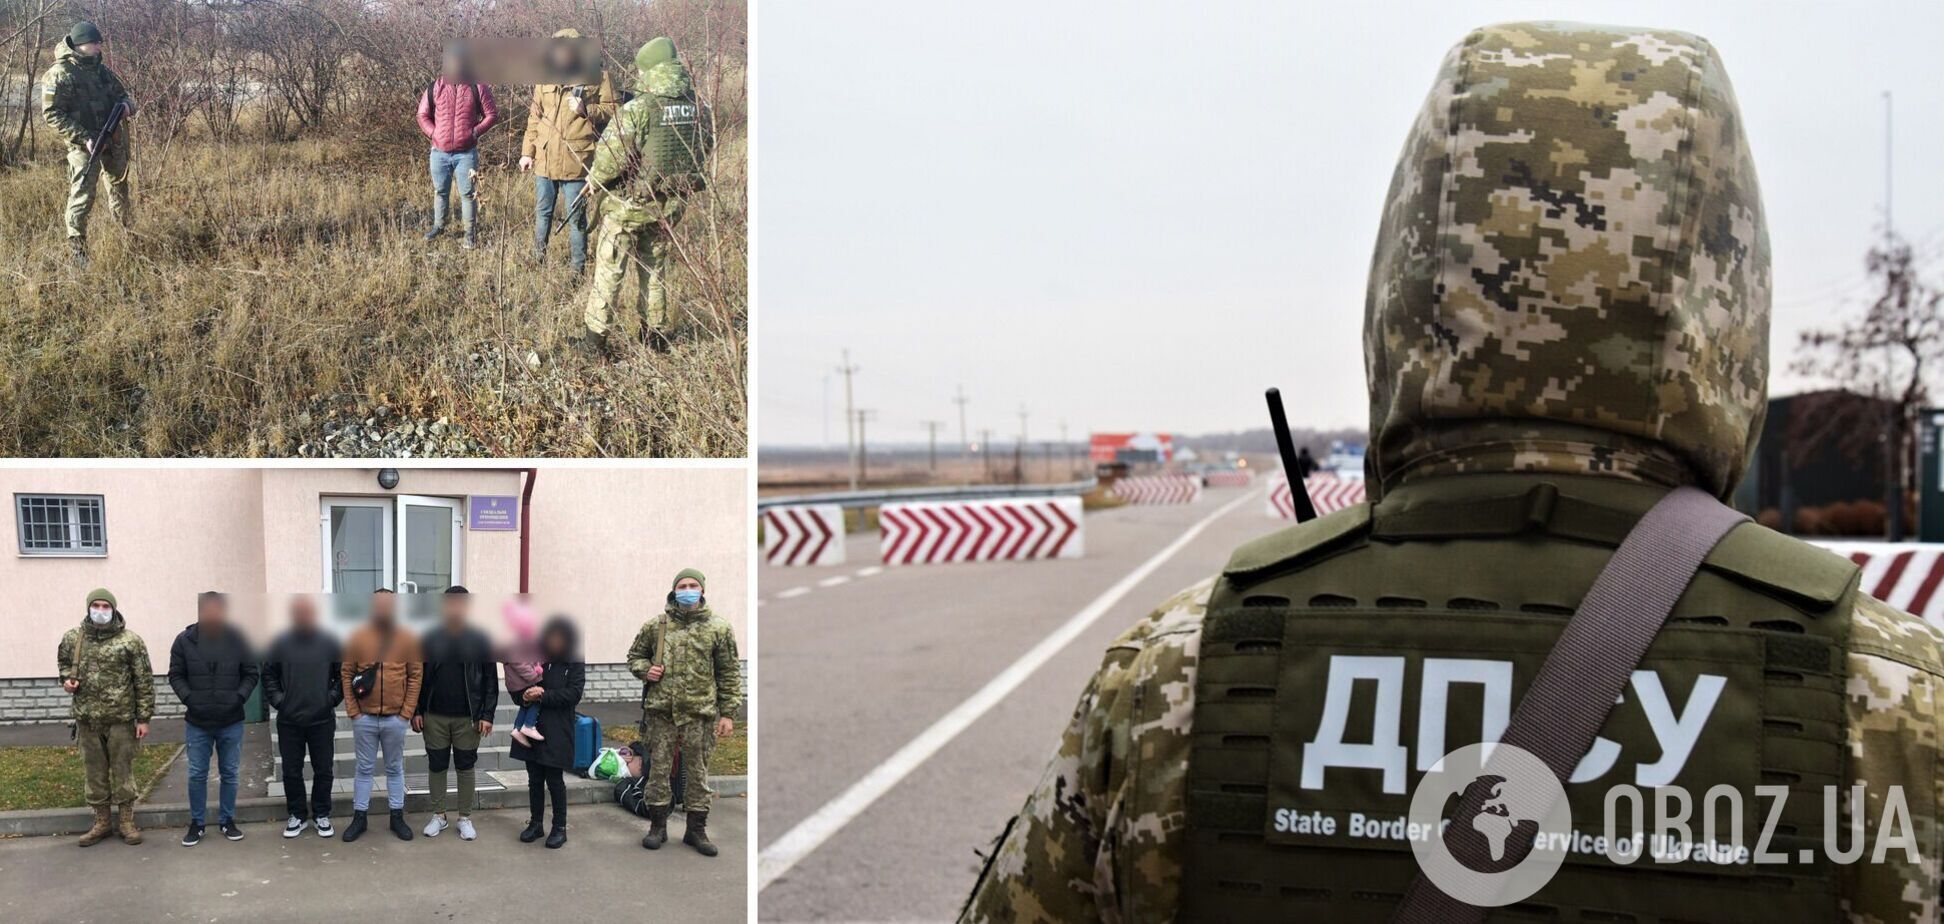 Прикордонники затримали нелегалів на українсько-польському кордоні. Фото і всі подробиці